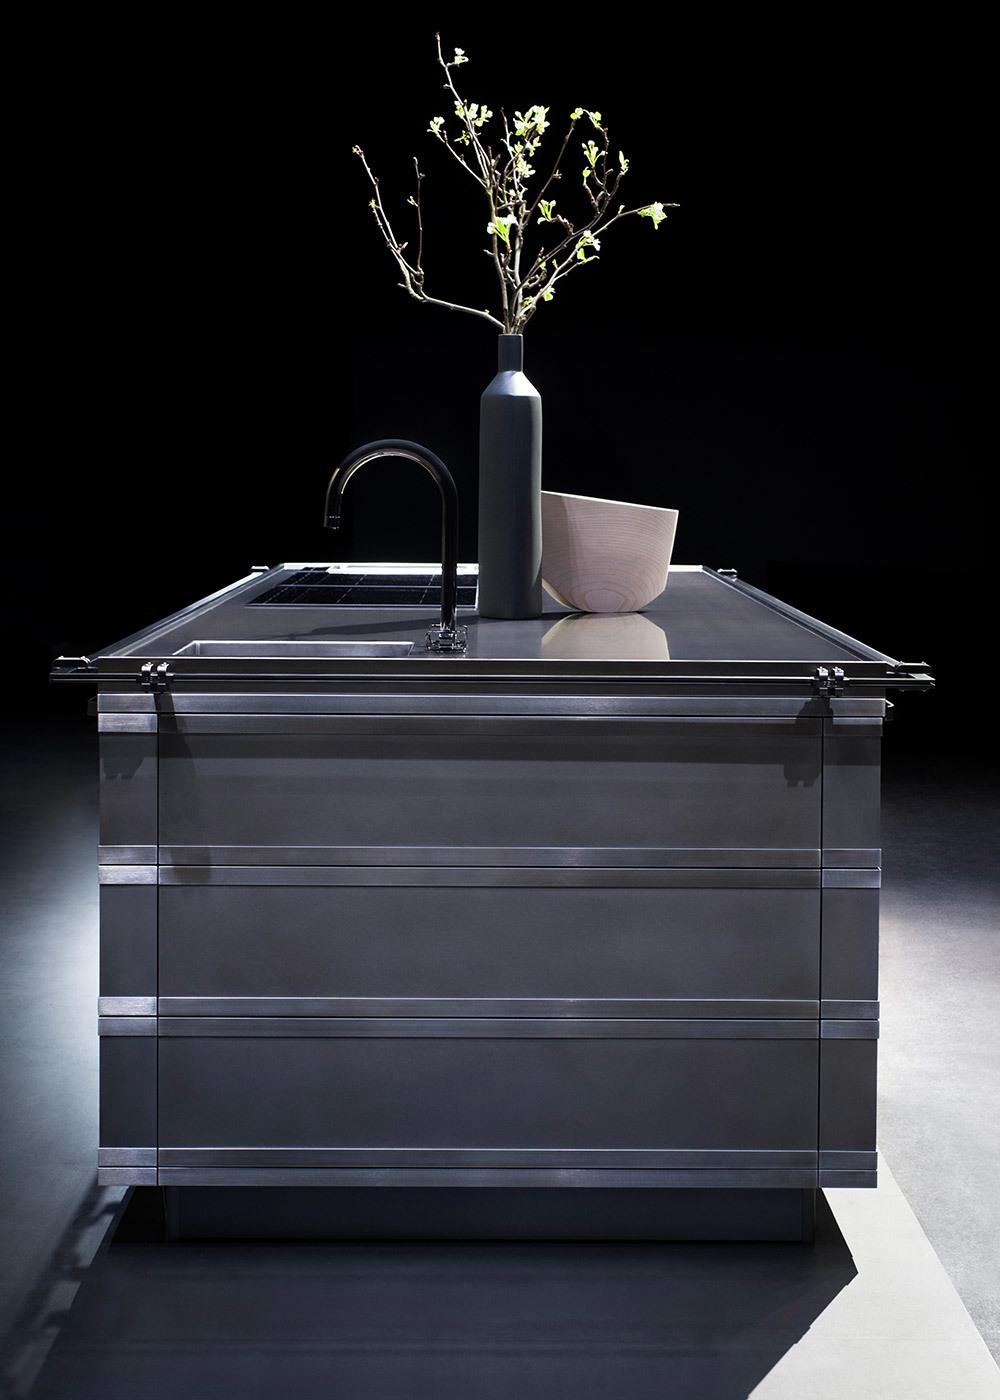 imagen 2 de Fendi diseña las cocinas más modernas y espectaculares.